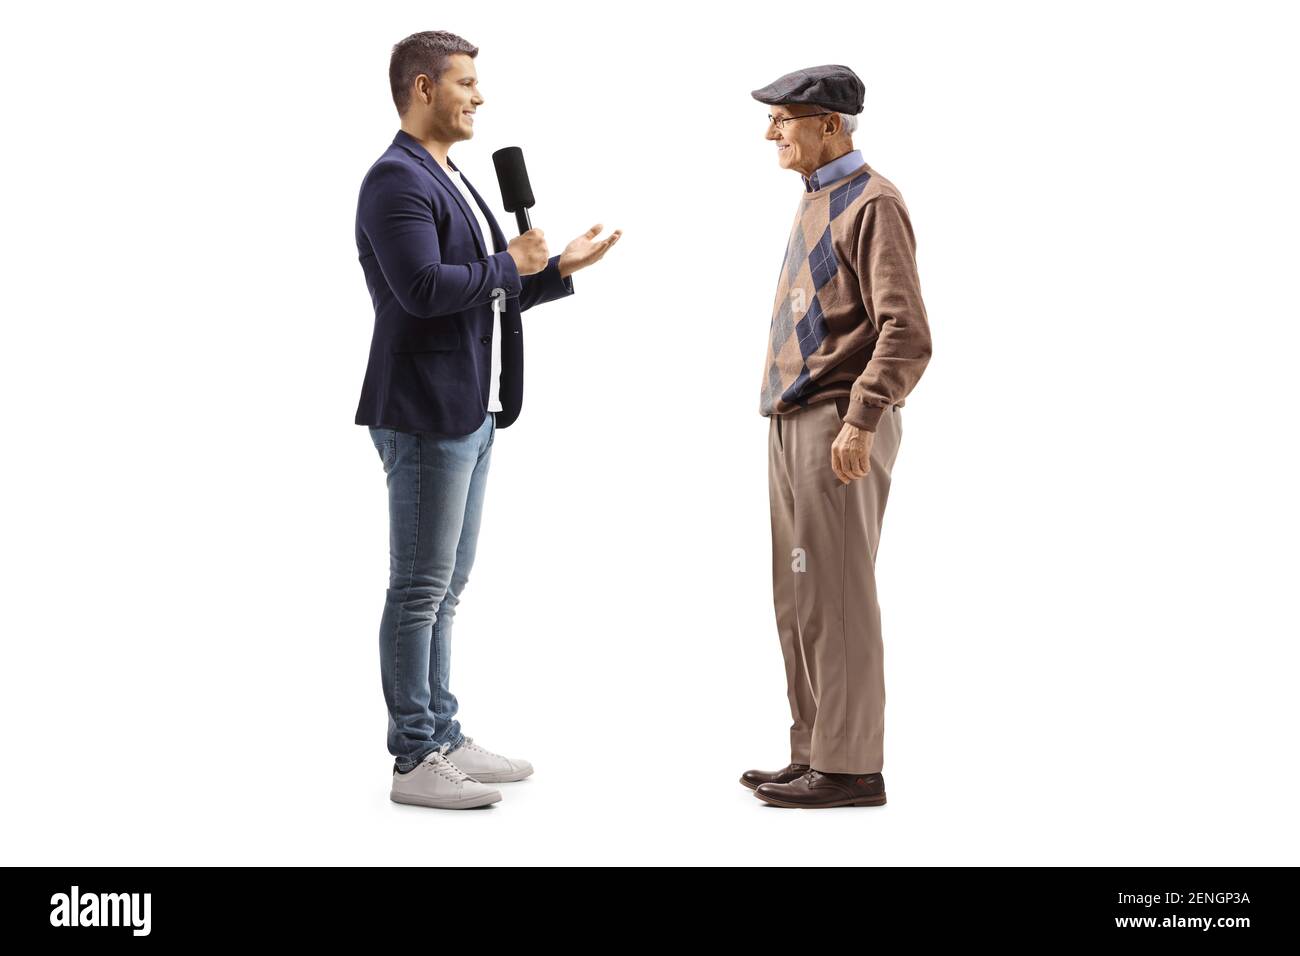 Ein junger Reporter interviewte einen älteren Mann, der auf Weiß isoliert war Hintergrund Stockfoto